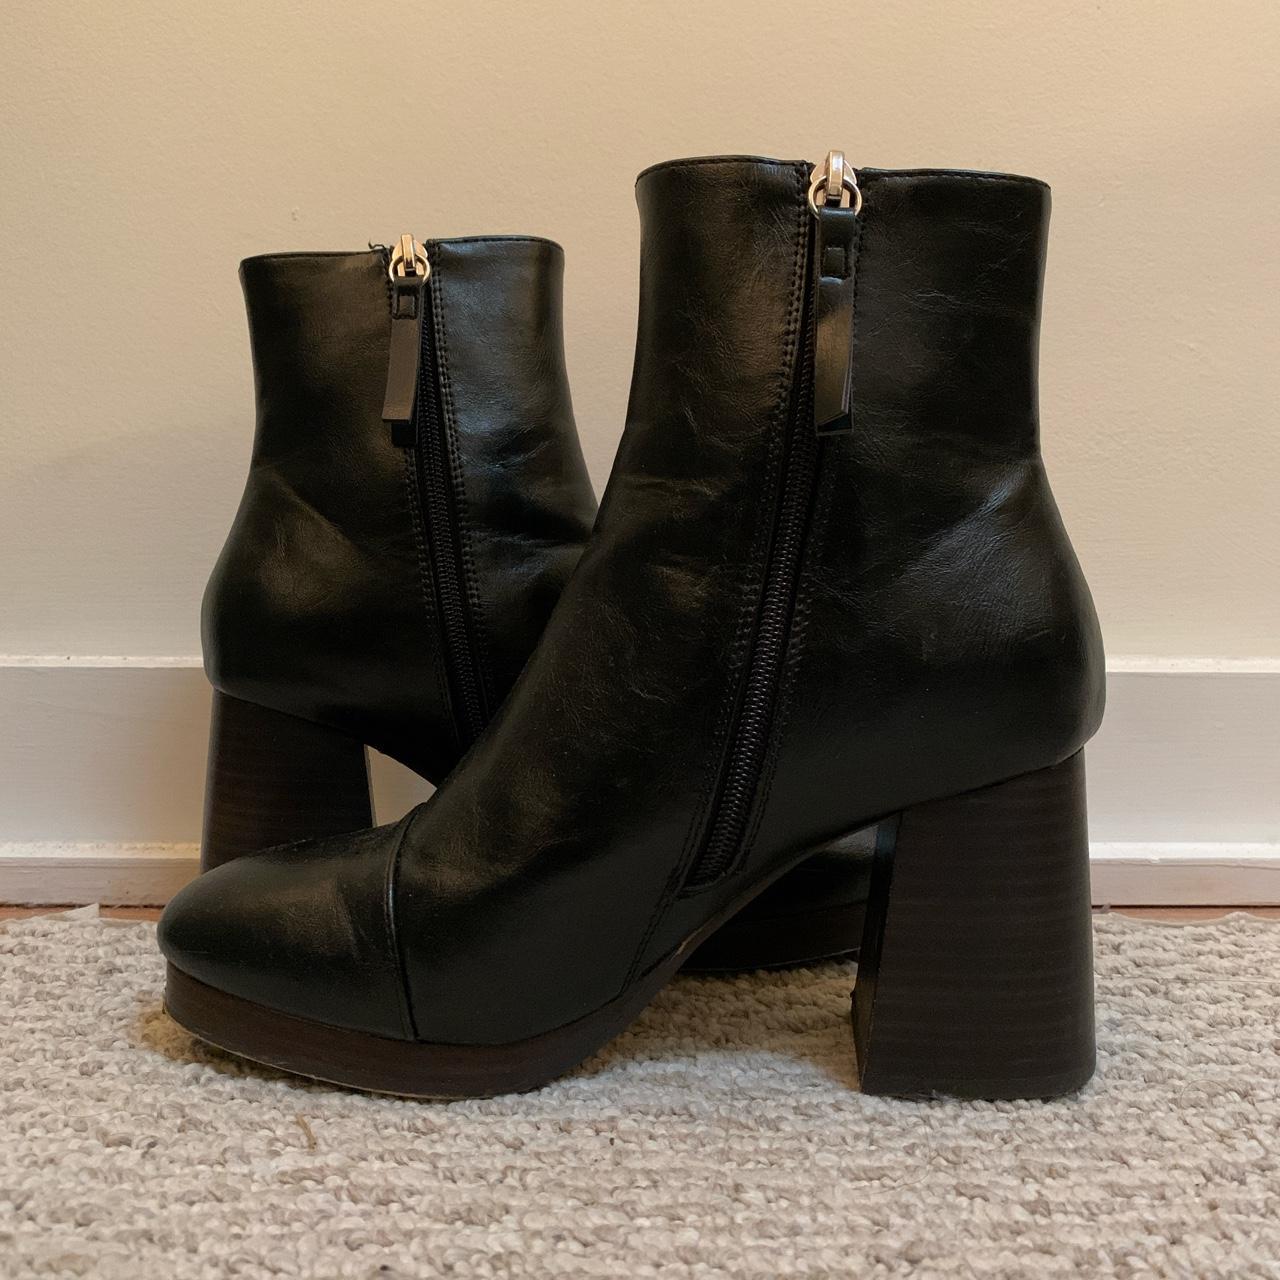 Block heel booties - black boots with 2.5-3inch heel... - Depop